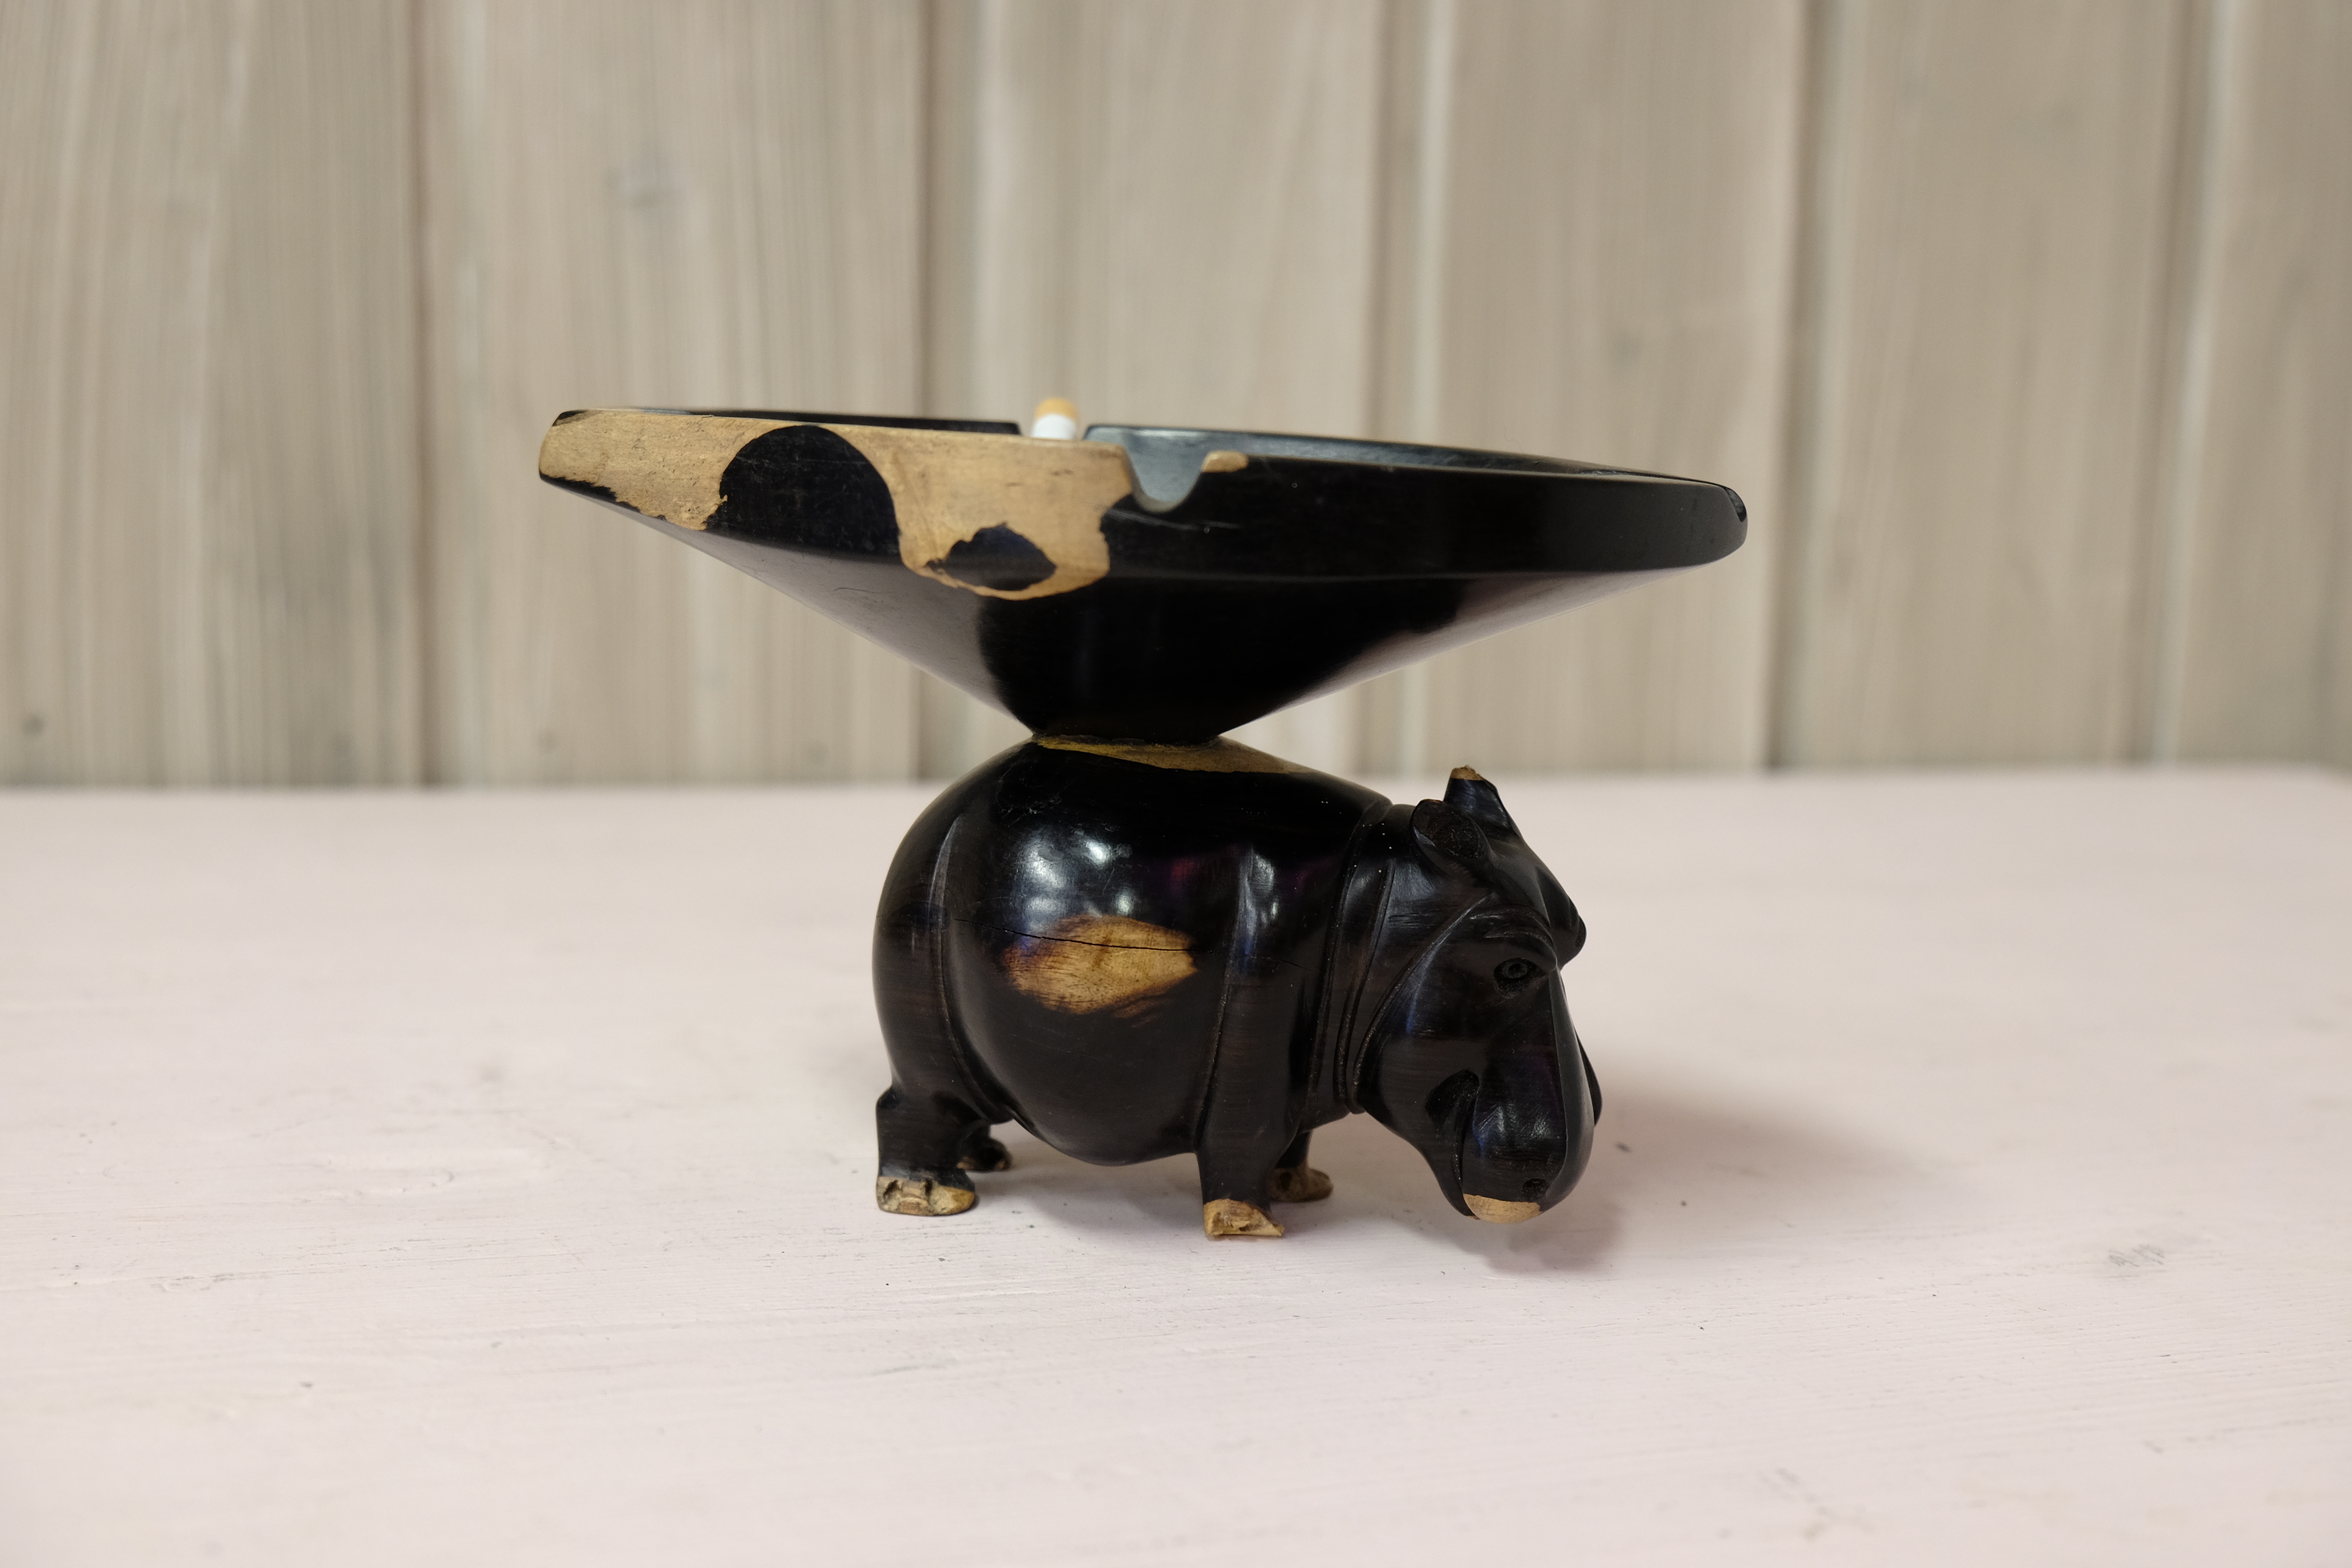 Hippopotamus with ashtray on its back ebony wood